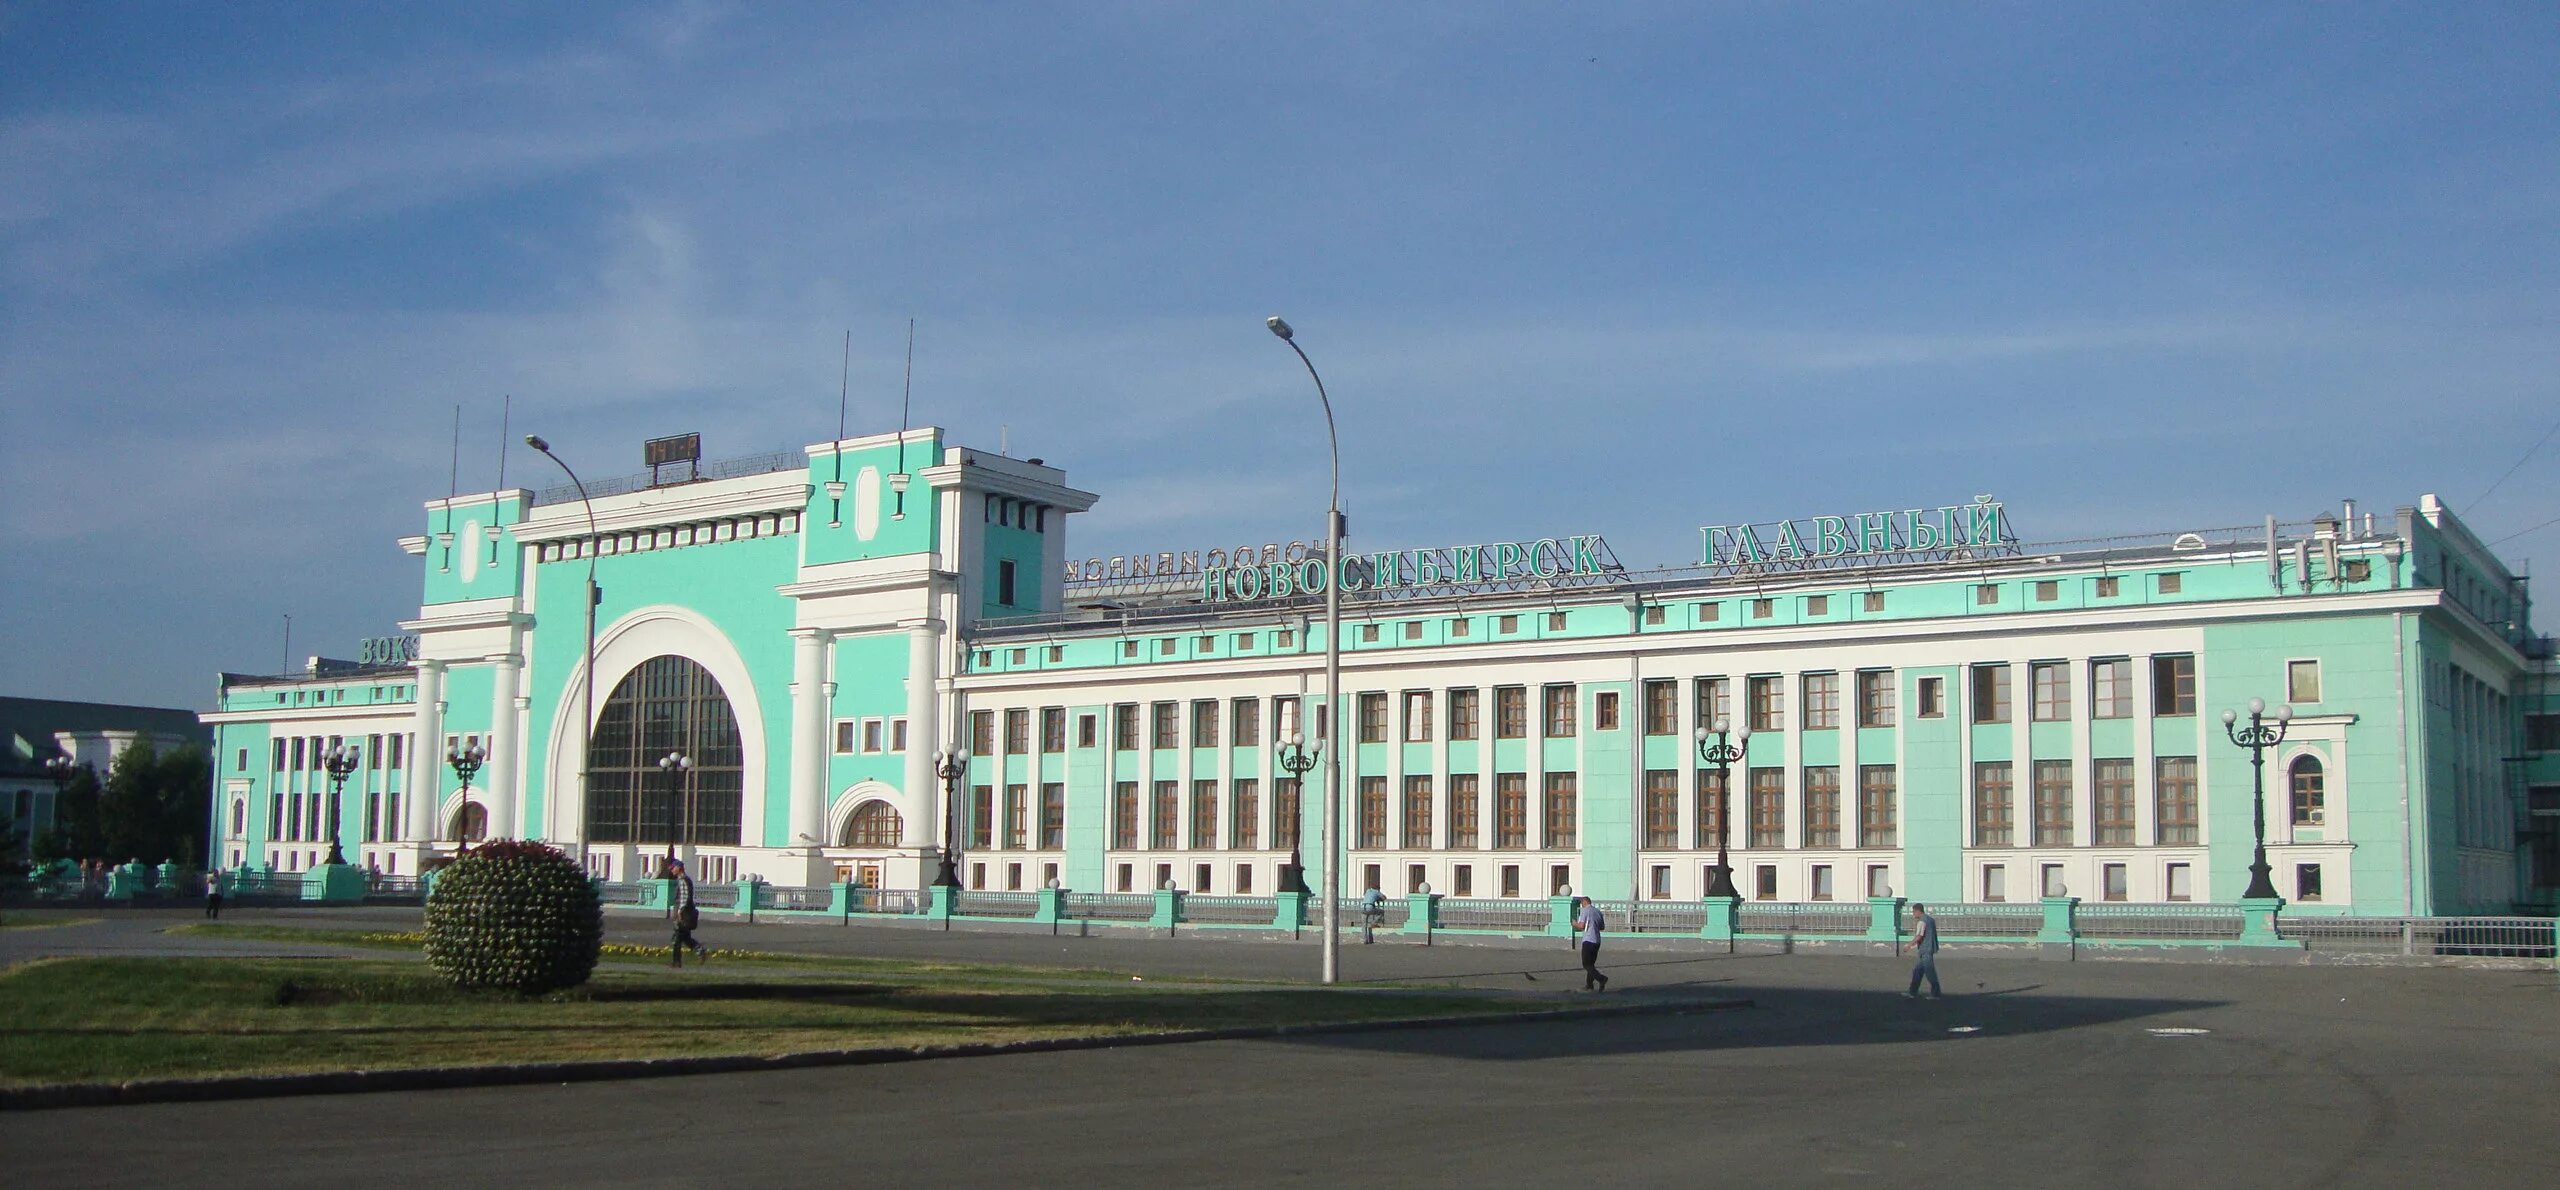 Здание железнодорожного вокзала Новосибирск-главный. Вокзал железнодорожной станции Новосибирск-главный. Ж Д вокзал Новосибирск главный. Новосибирск здание вокзал главный.